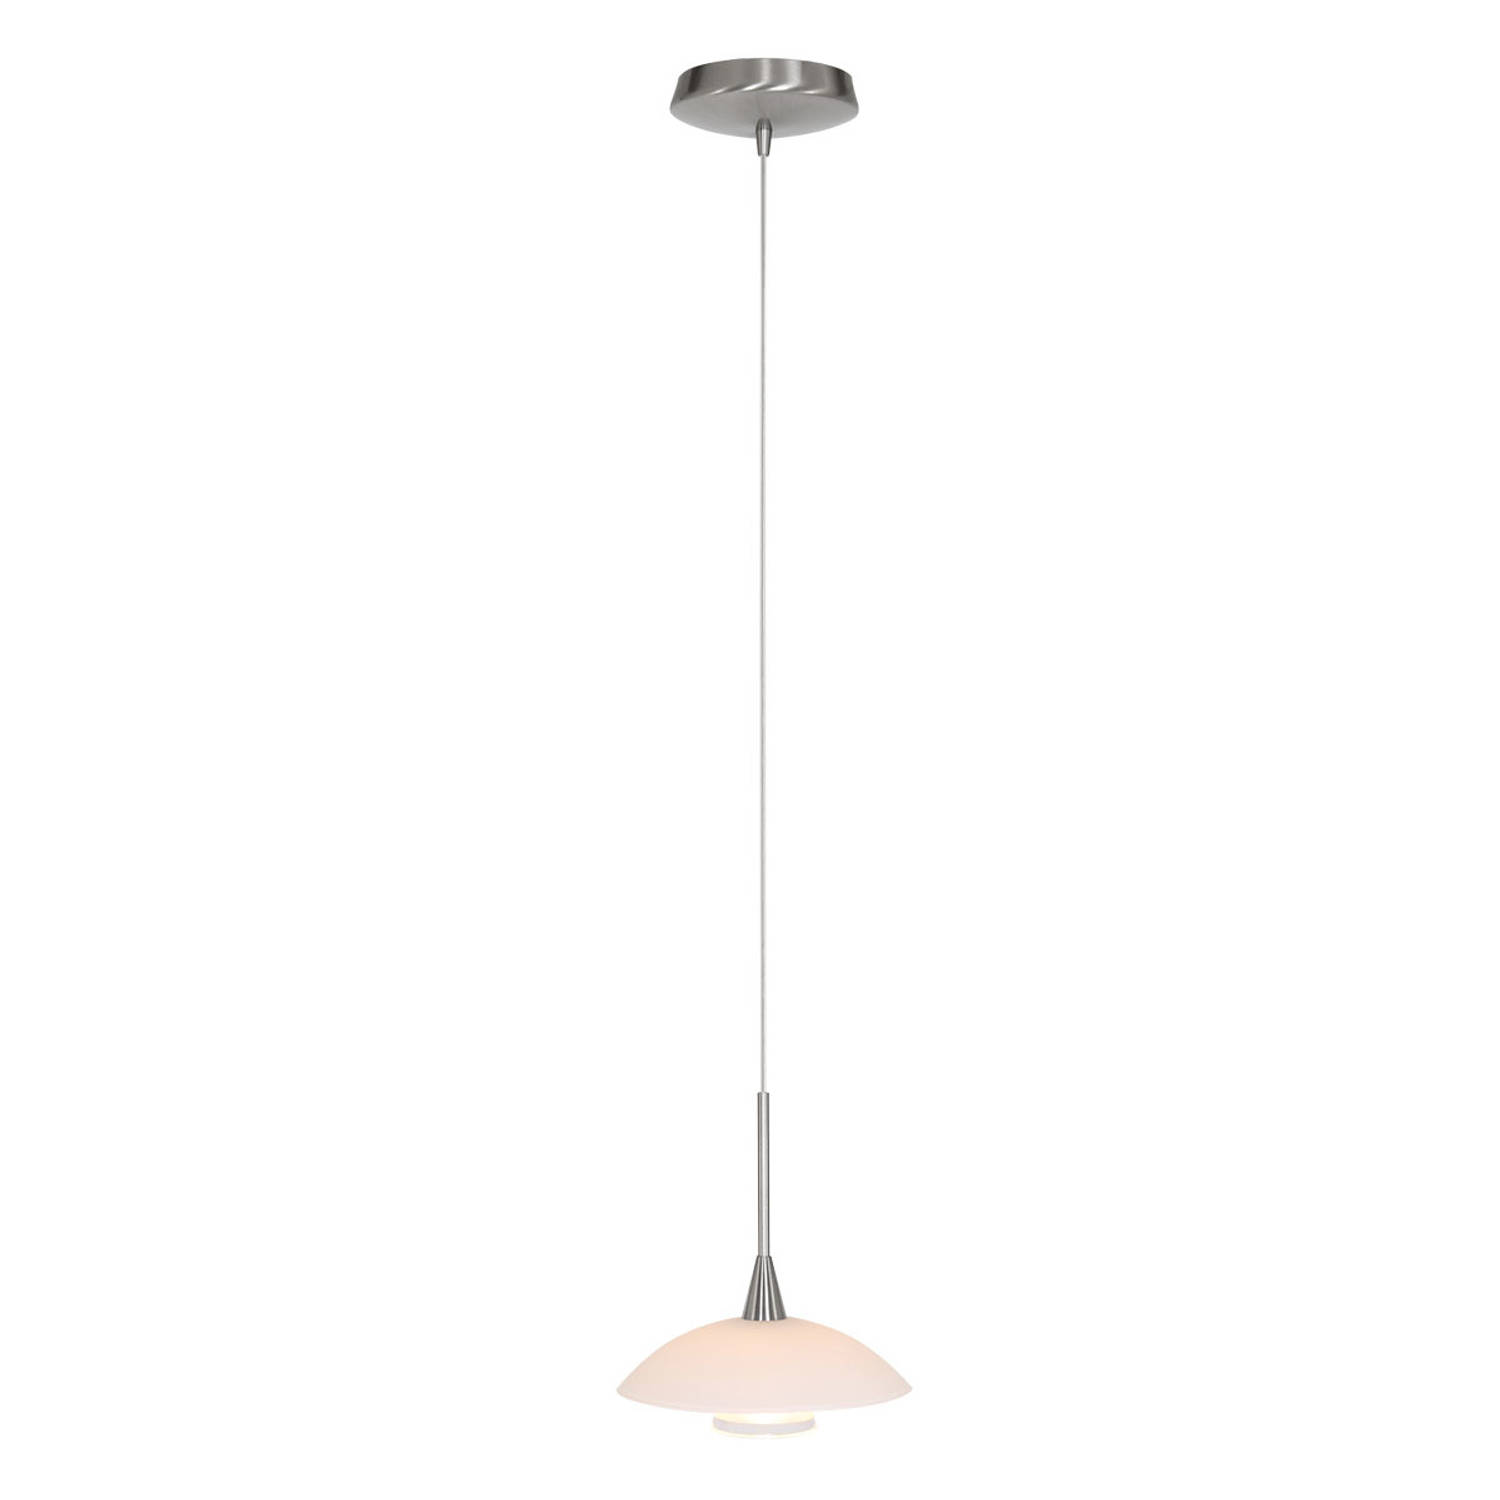 Steinhauer Design hanglamp TallerkenØ 18cm 2655ST